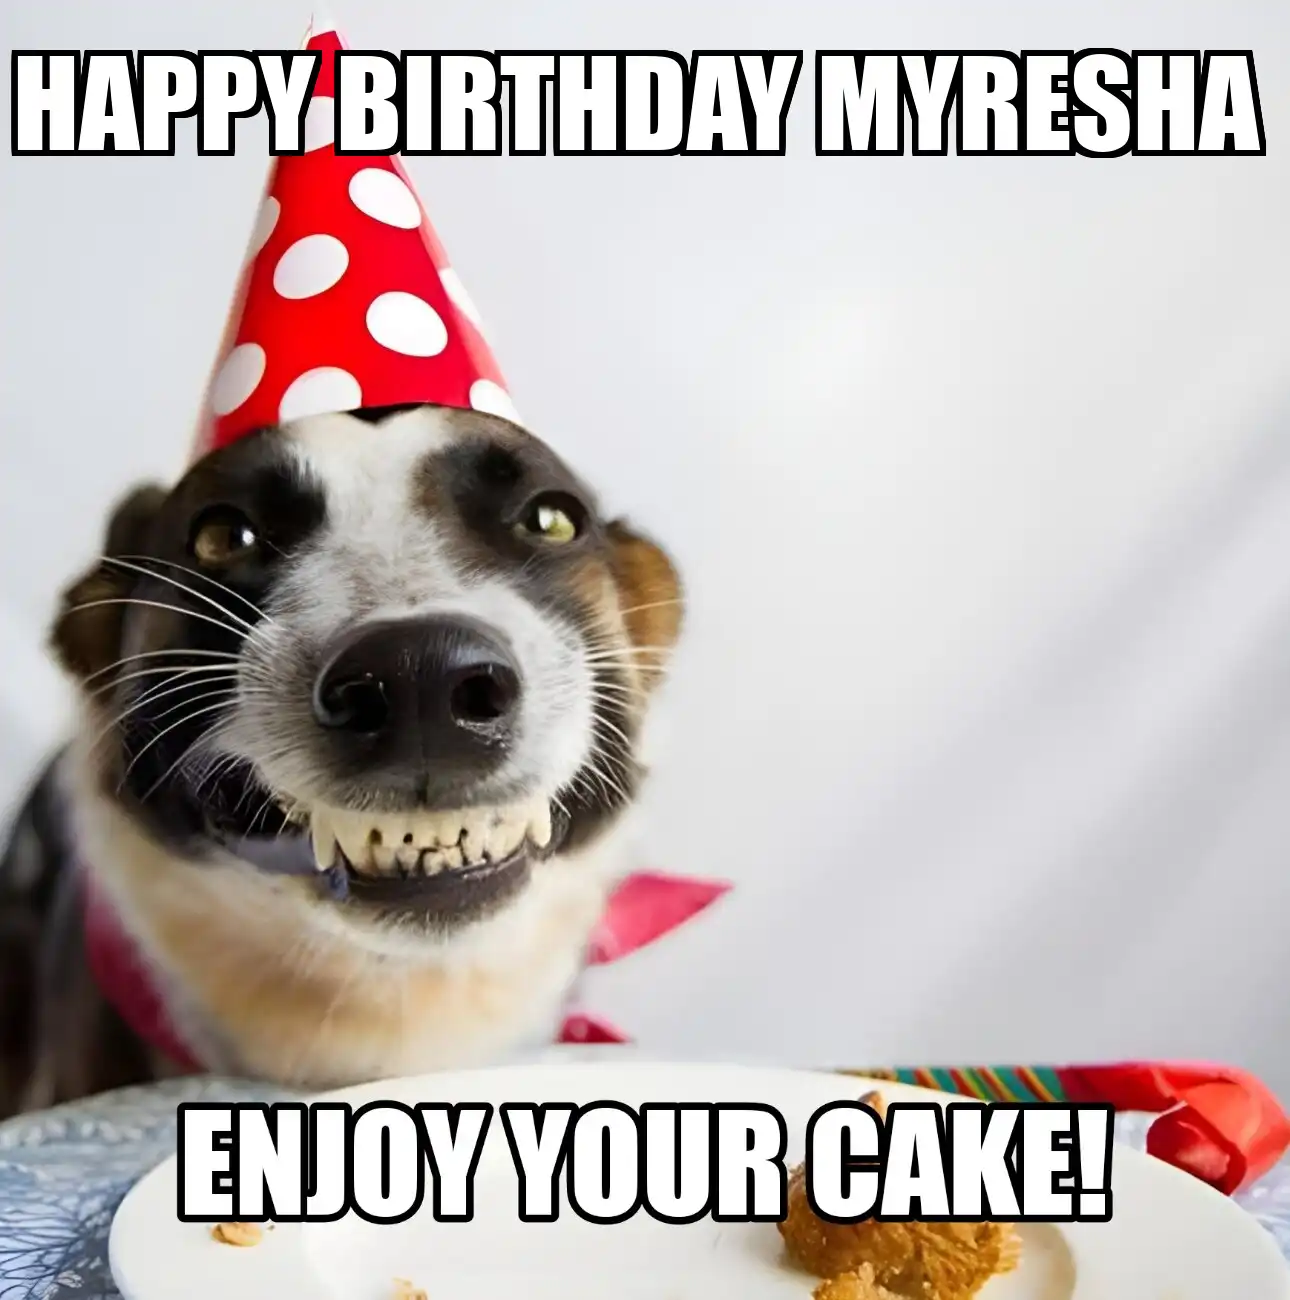 Happy Birthday Myresha Enjoy Your Cake Dog Meme